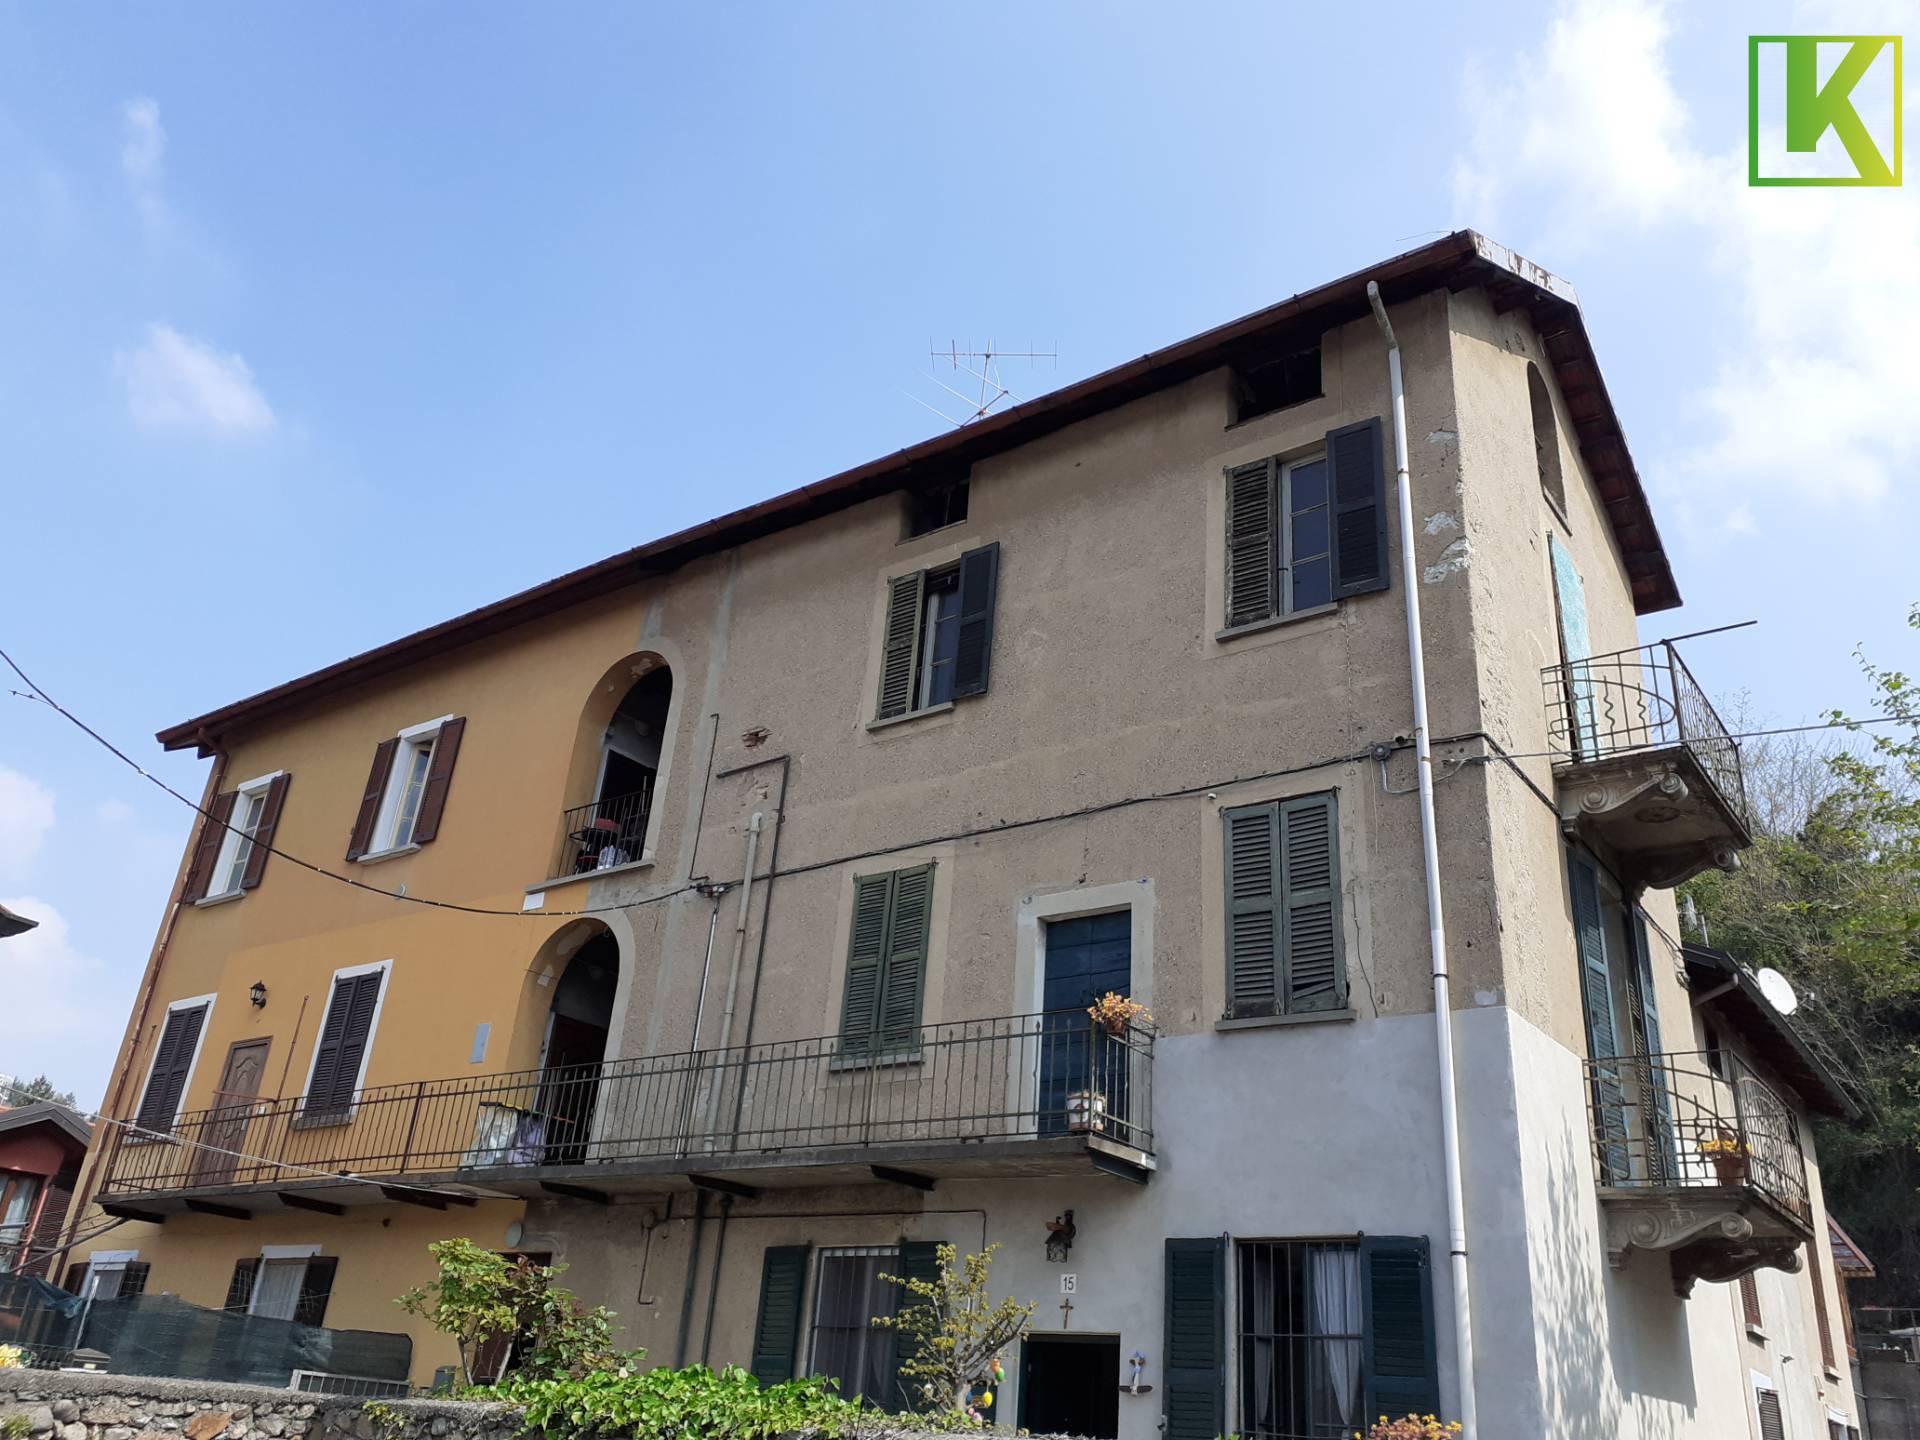 Appartamento in vendita a Varese, 2 locali, zona Località: Belforte, prezzo € 27.500 | PortaleAgenzieImmobiliari.it